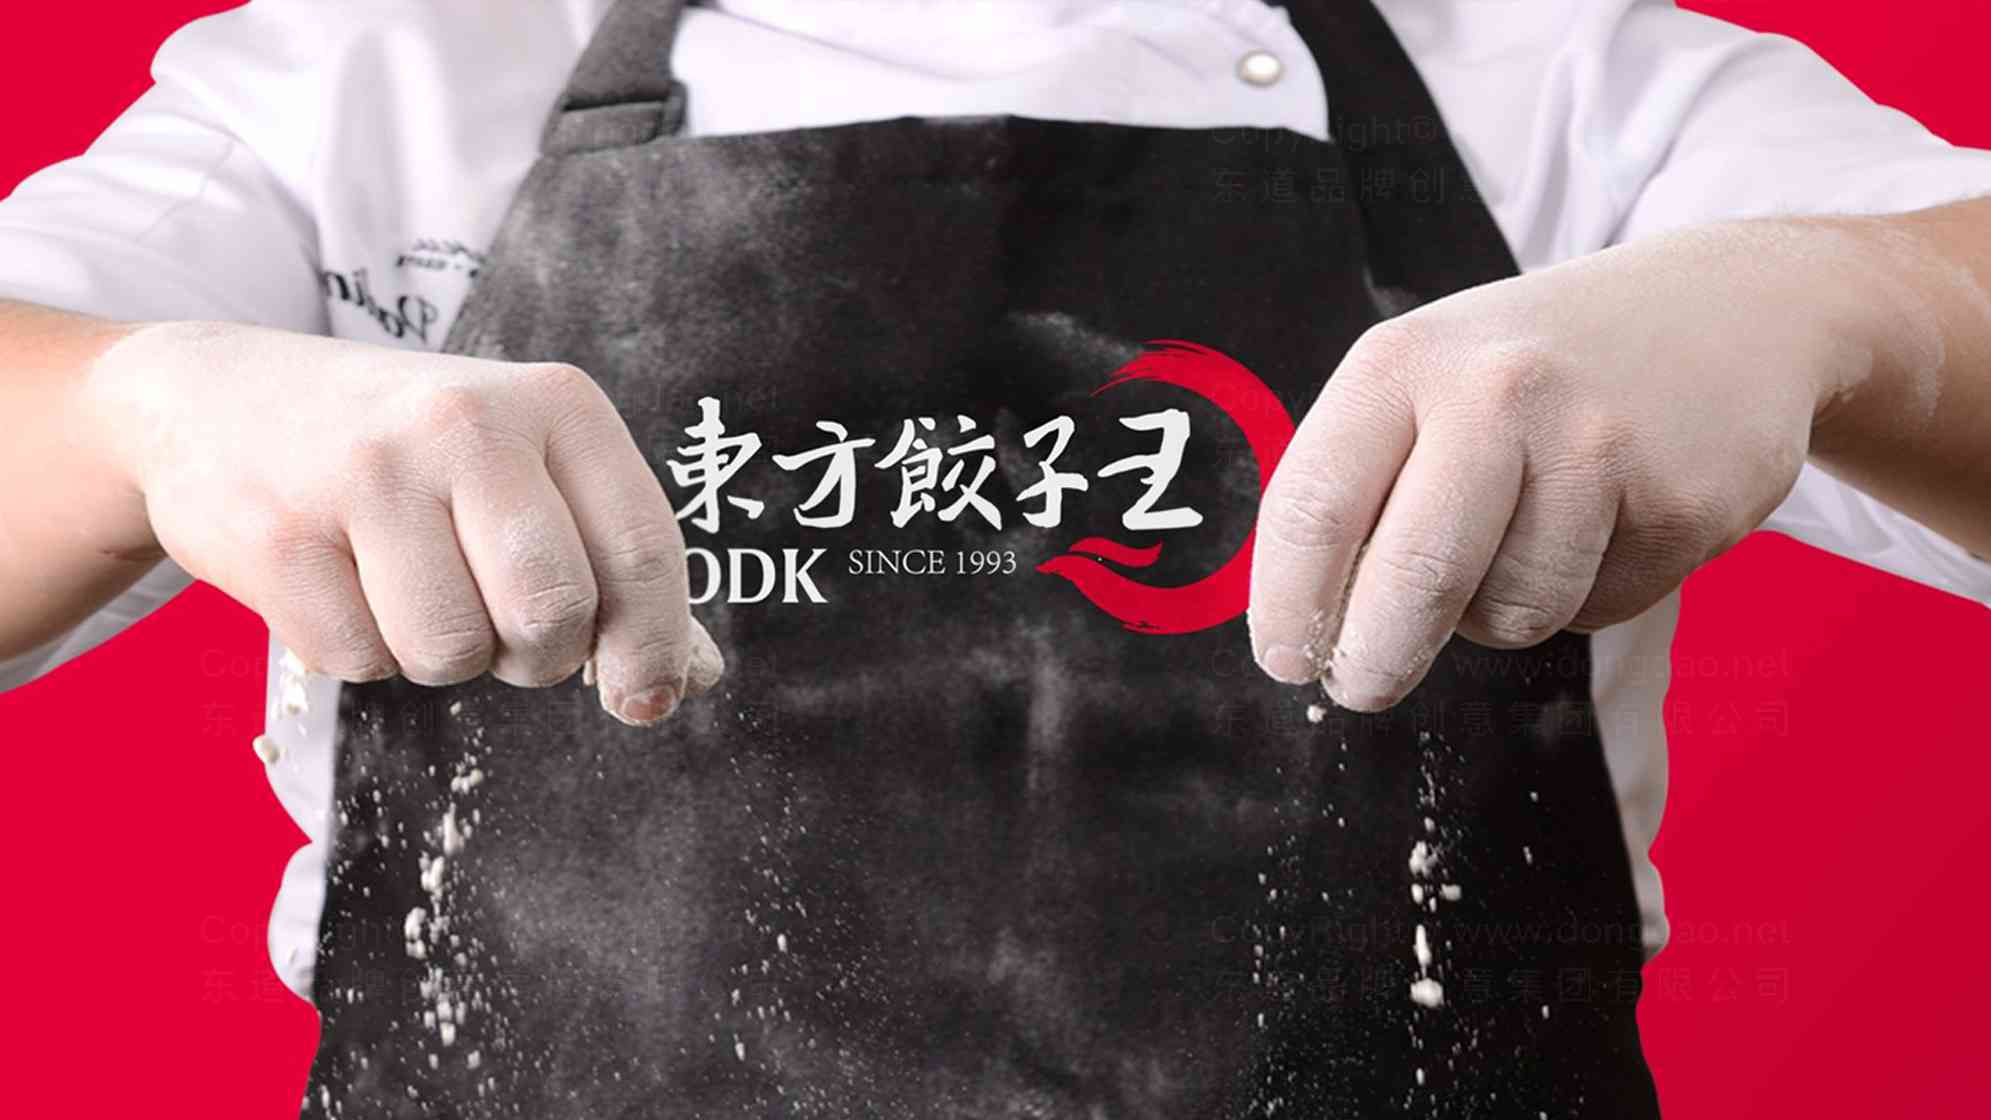 东方饺子王餐饮logo设计图片素材_5